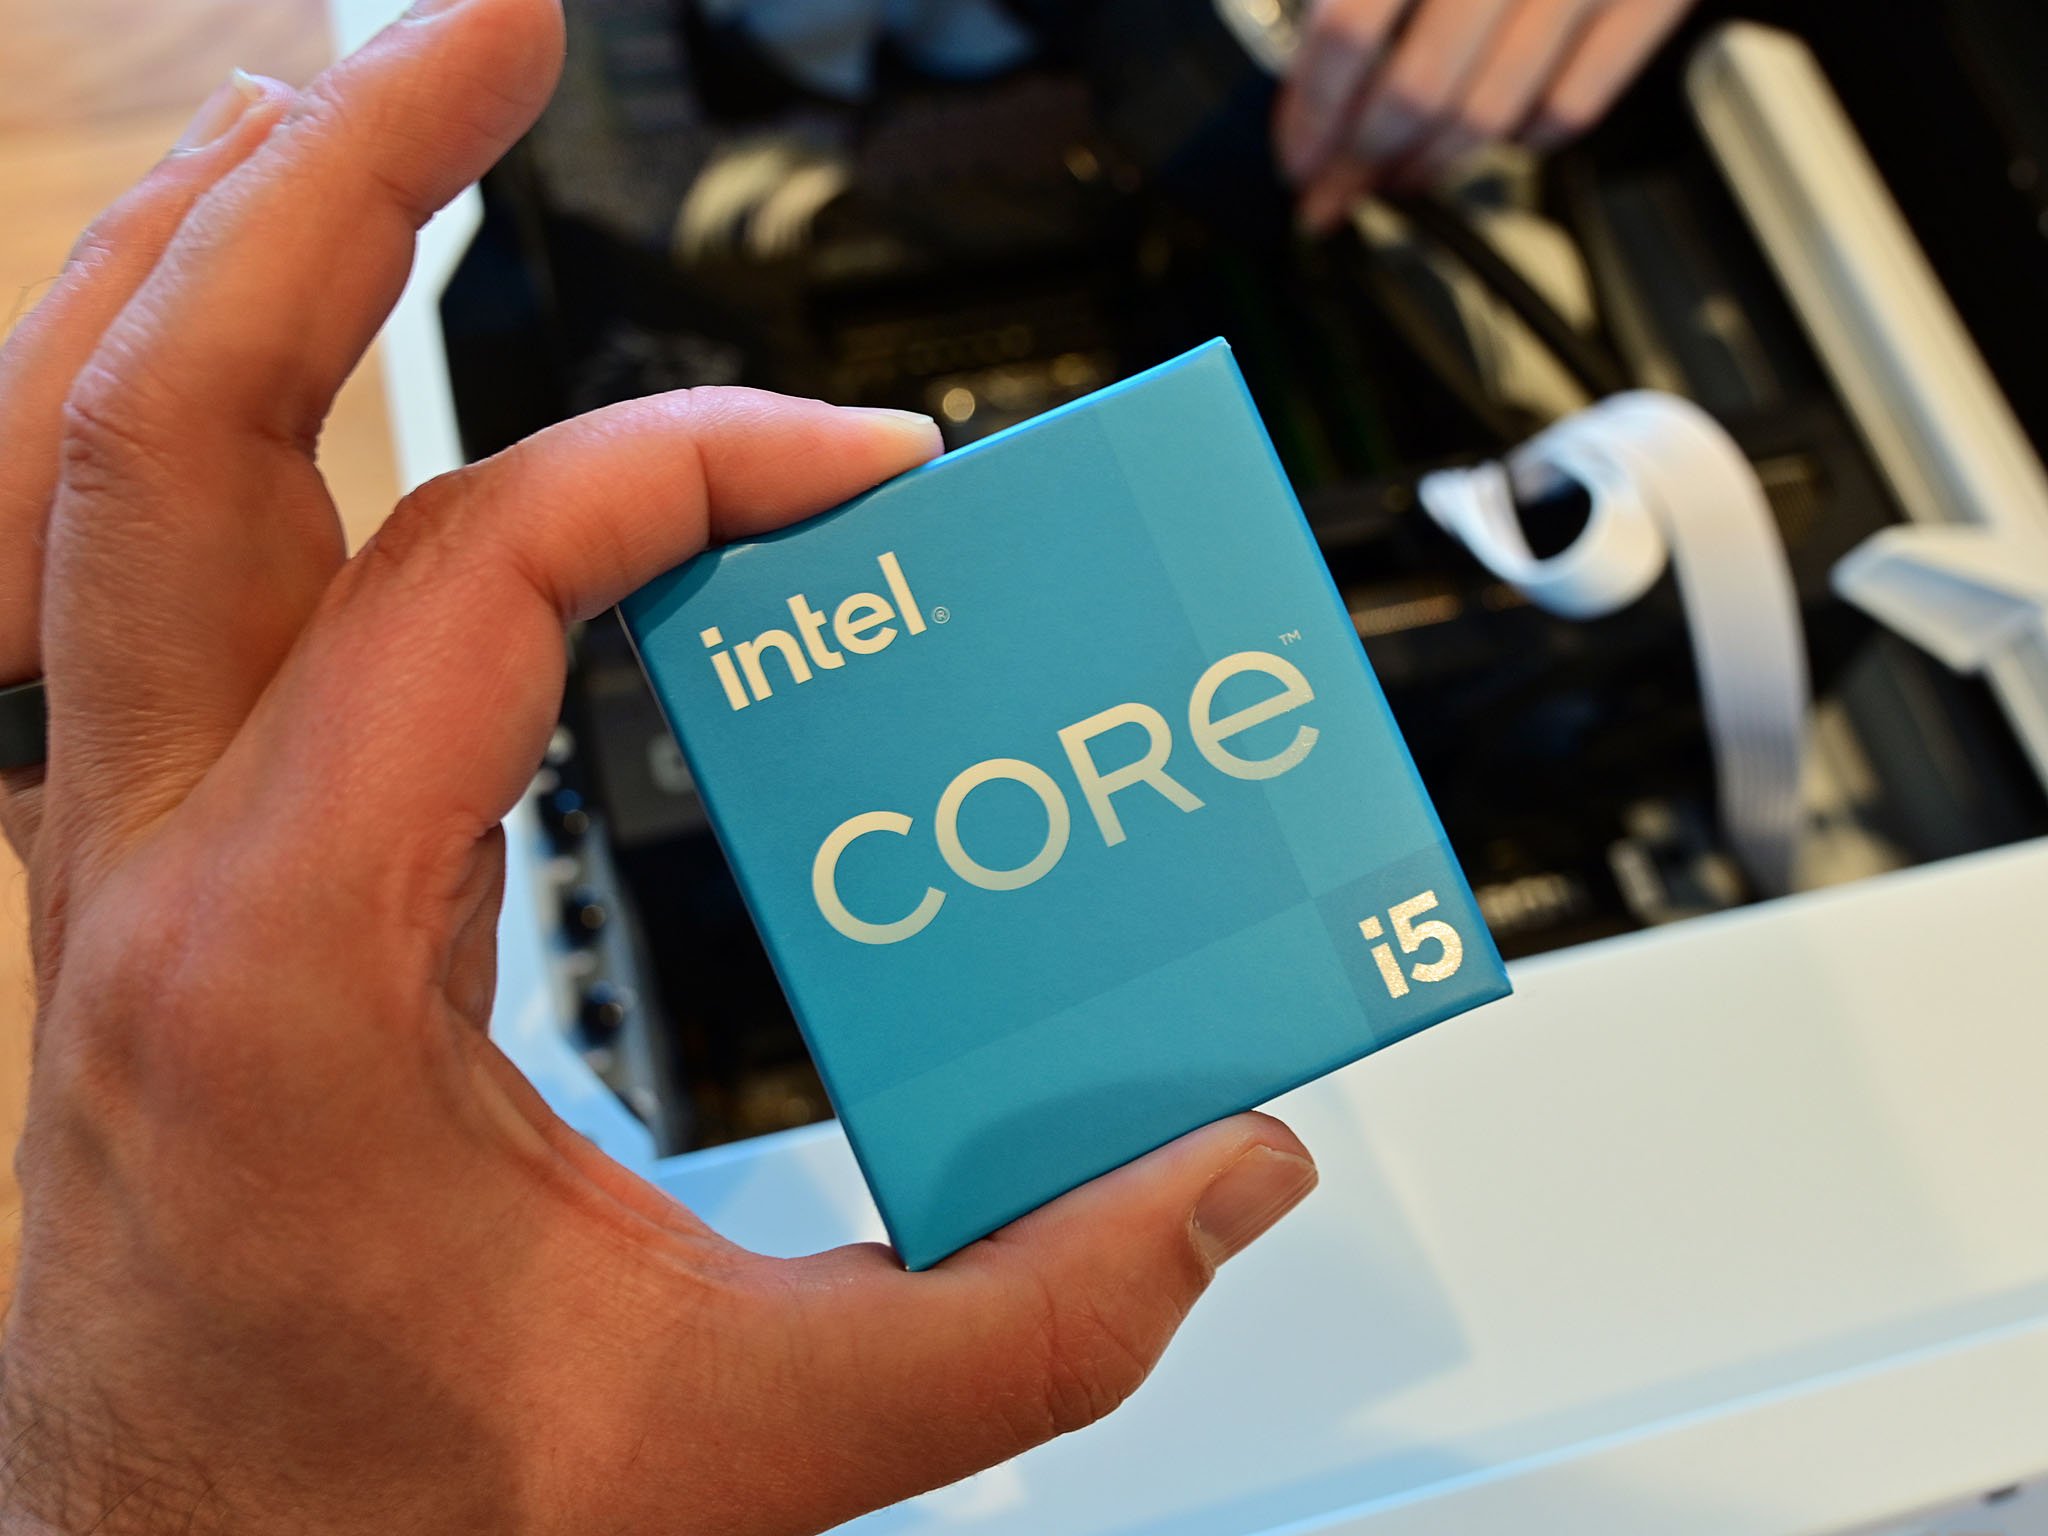 Intel Corei5-Chip der 12. Generation